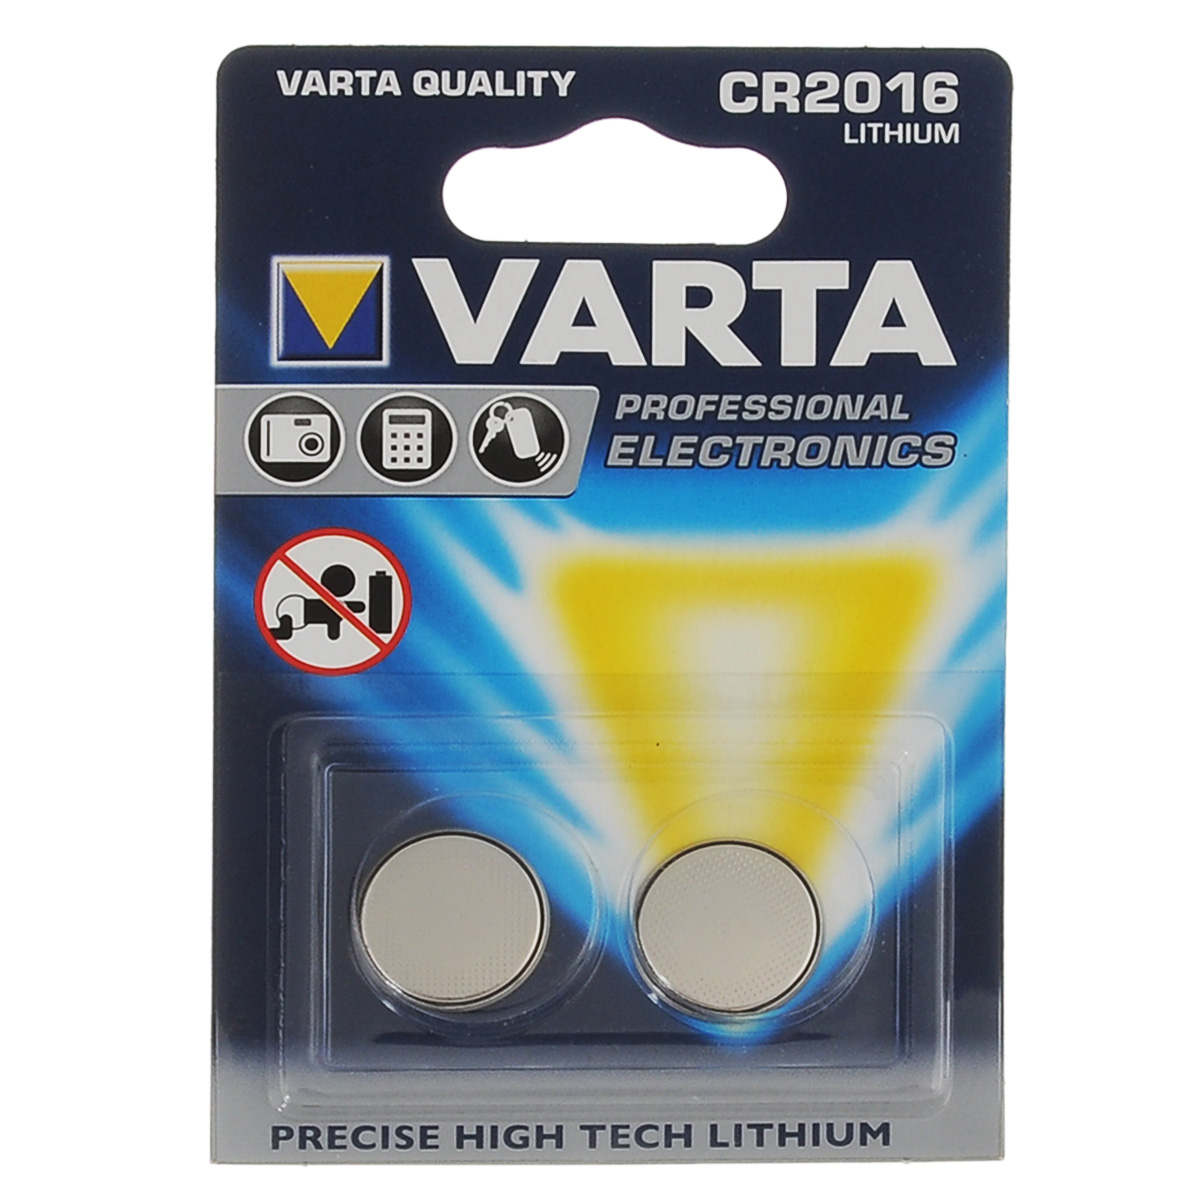 фото Батарейка литиевая Varta "Professional Electronics", тип CR2016, 3В, 2 шт